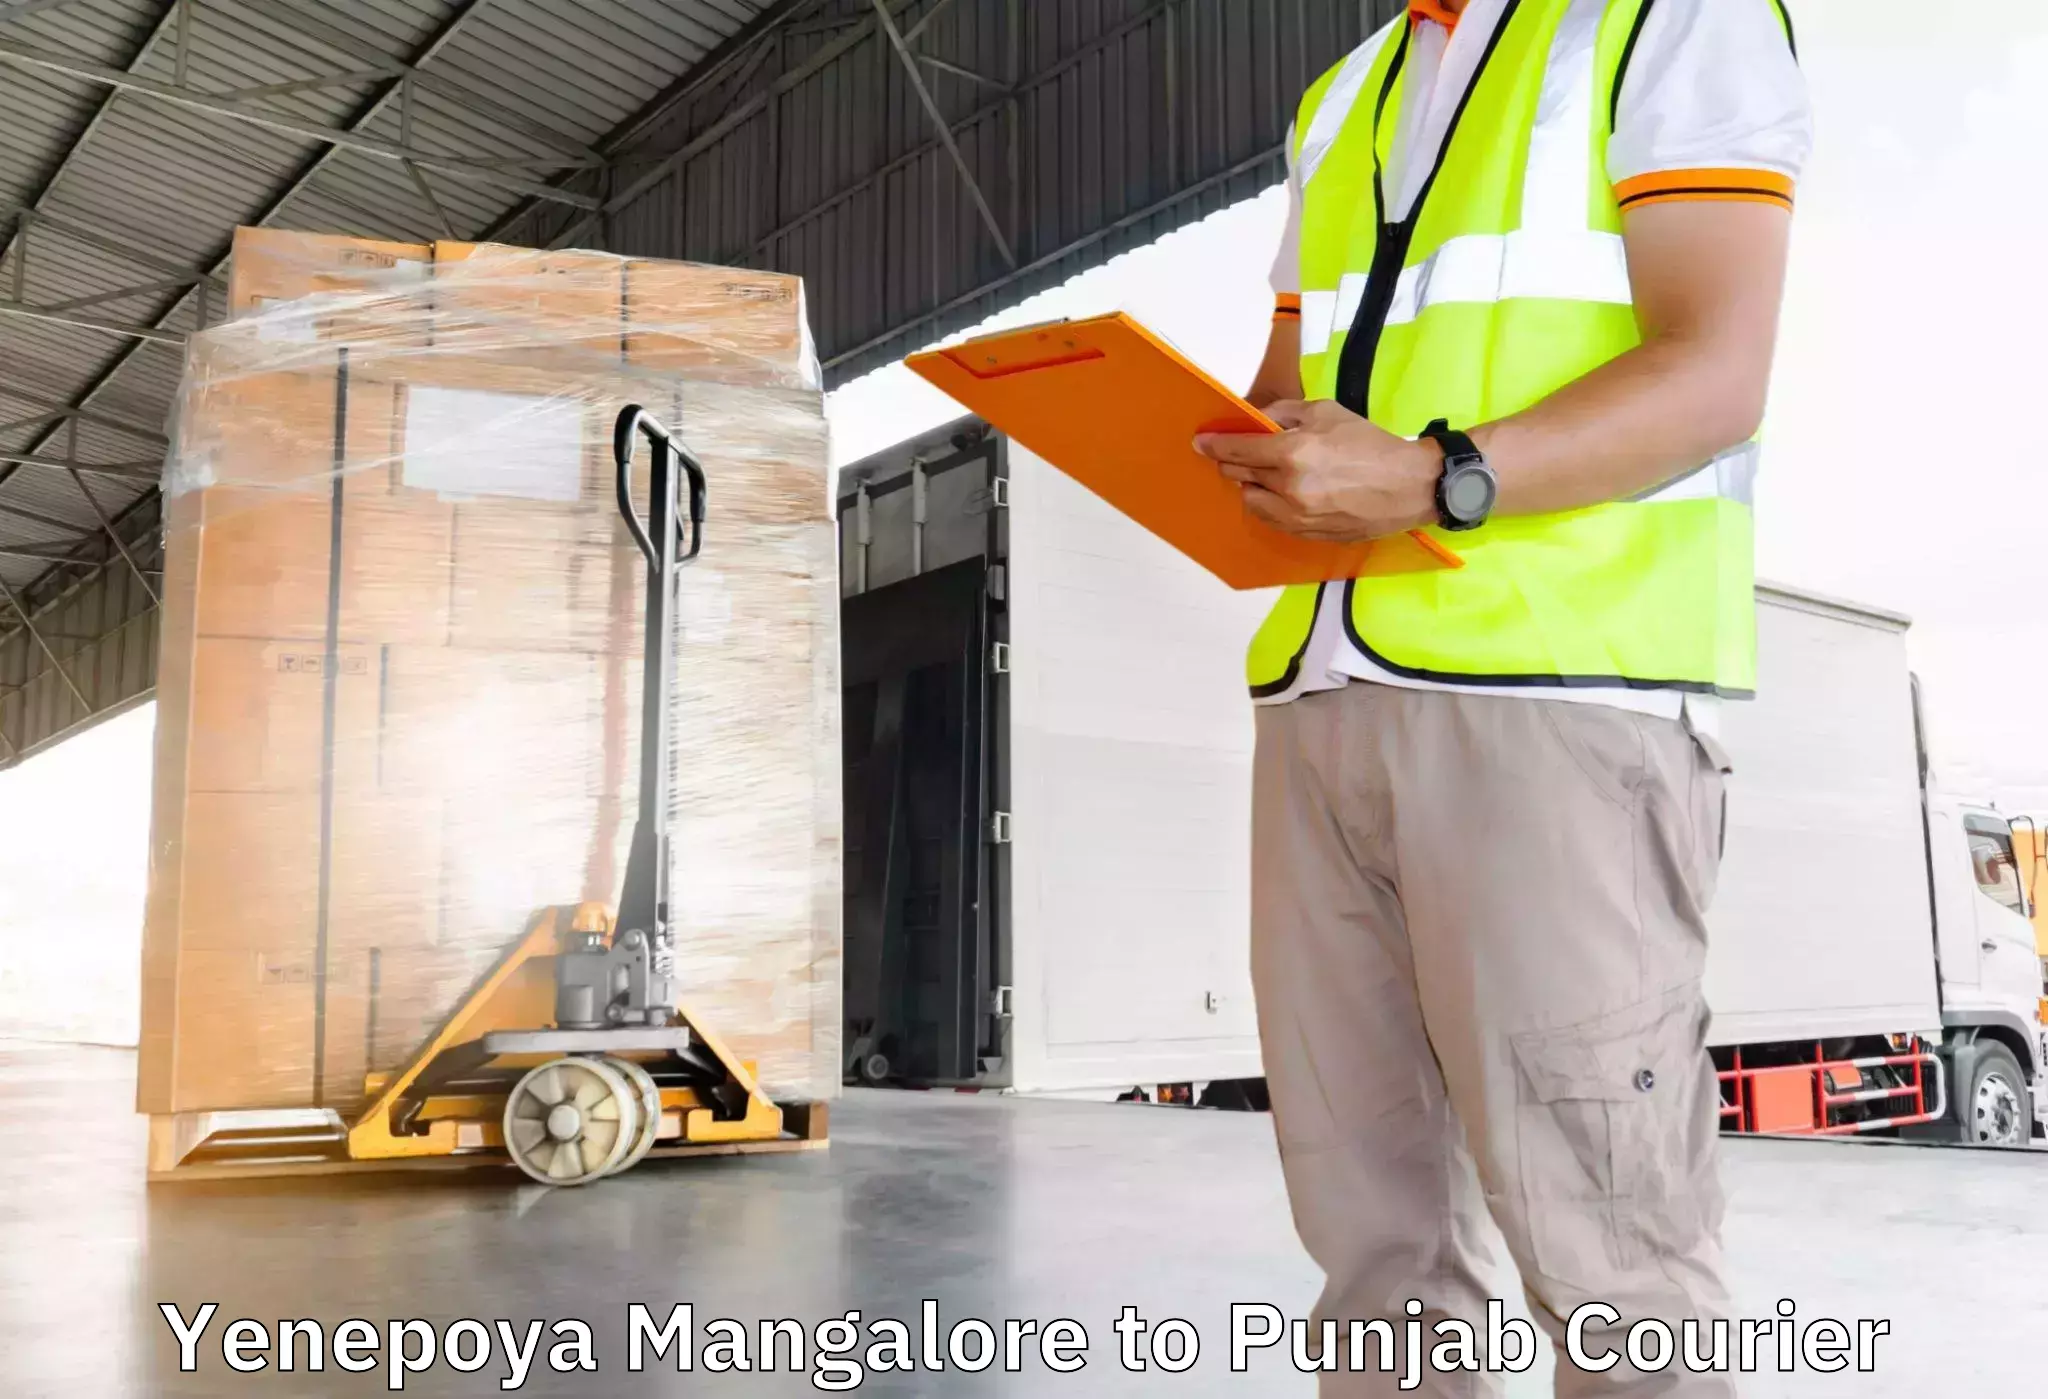 Household goods transporters Yenepoya Mangalore to Jalandhar